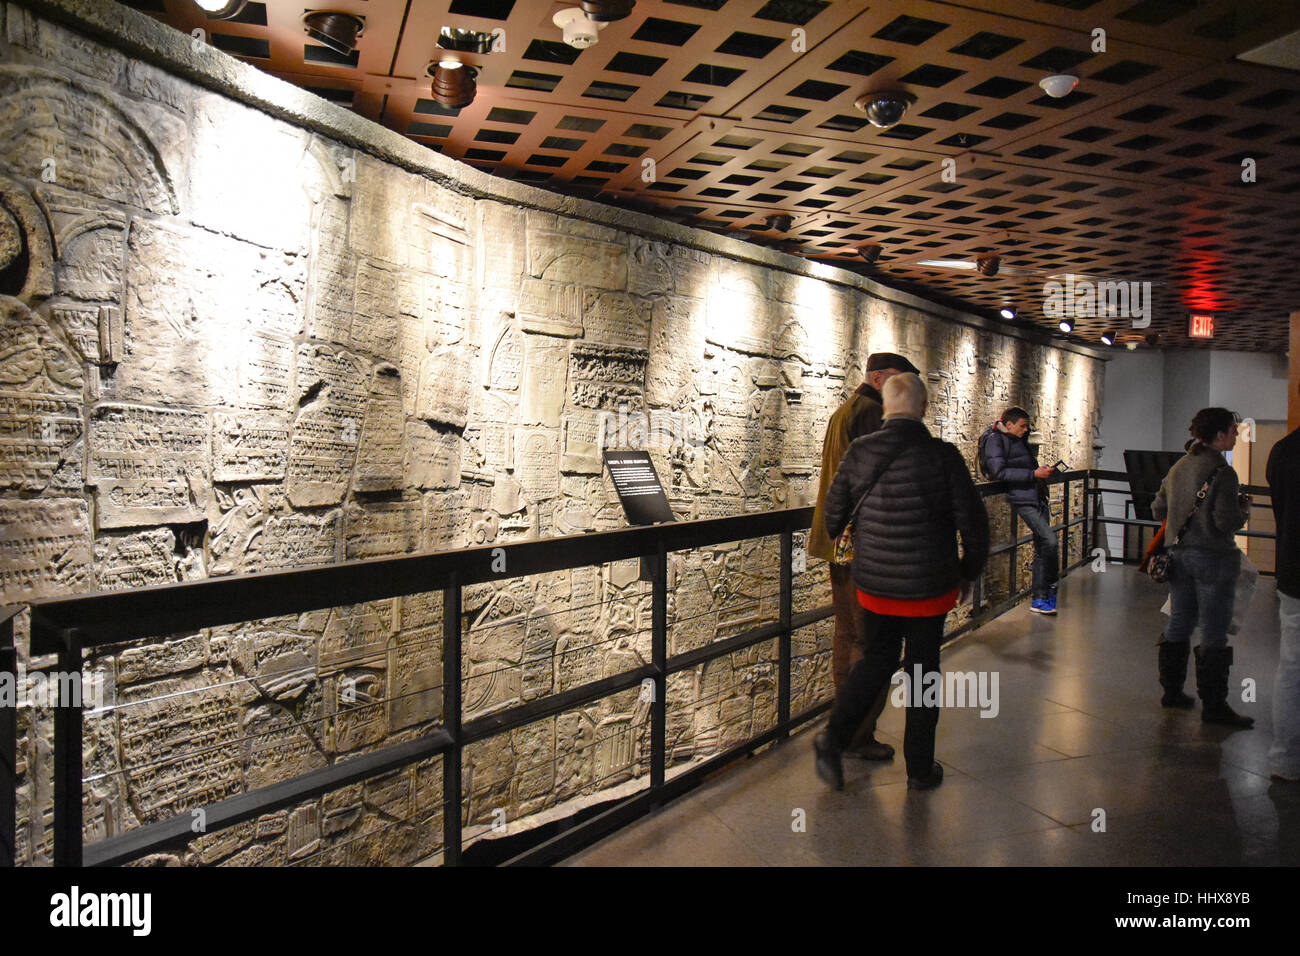 Washington DC, USA - Innenansicht des Holocaust Memorial Museums. Echte Bilder der Deportierten, Nazi-Propaganda, Objekte, Krematorium. Stockfoto